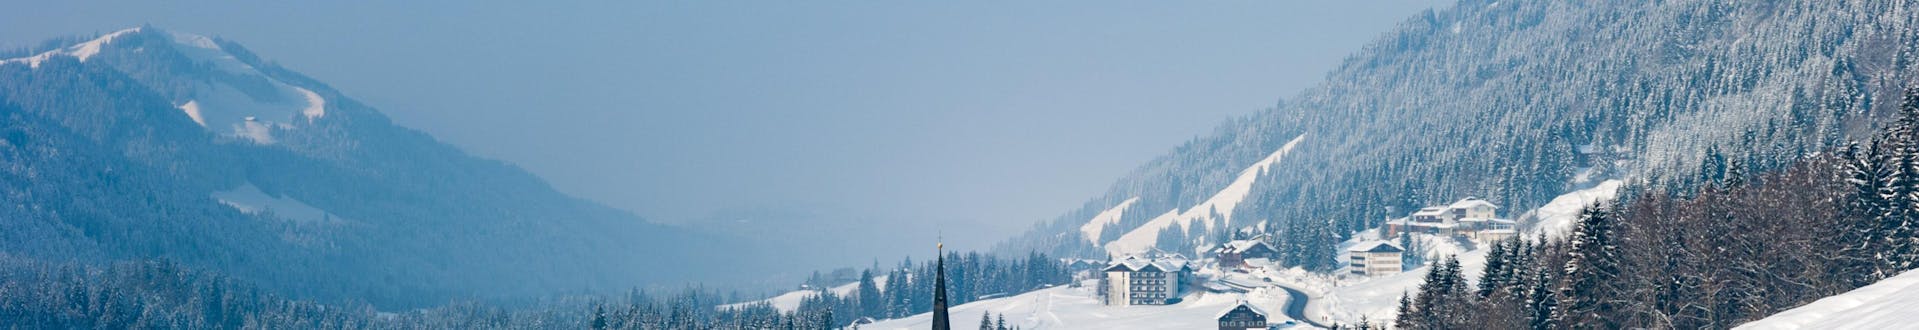 Ein Blick auf Balderschwang im Winter, einem verträumten kleinen Skigebiet in Bayern in dem Besucher bei einer der örtlichen Skischulen einen Skikurs buchen können.